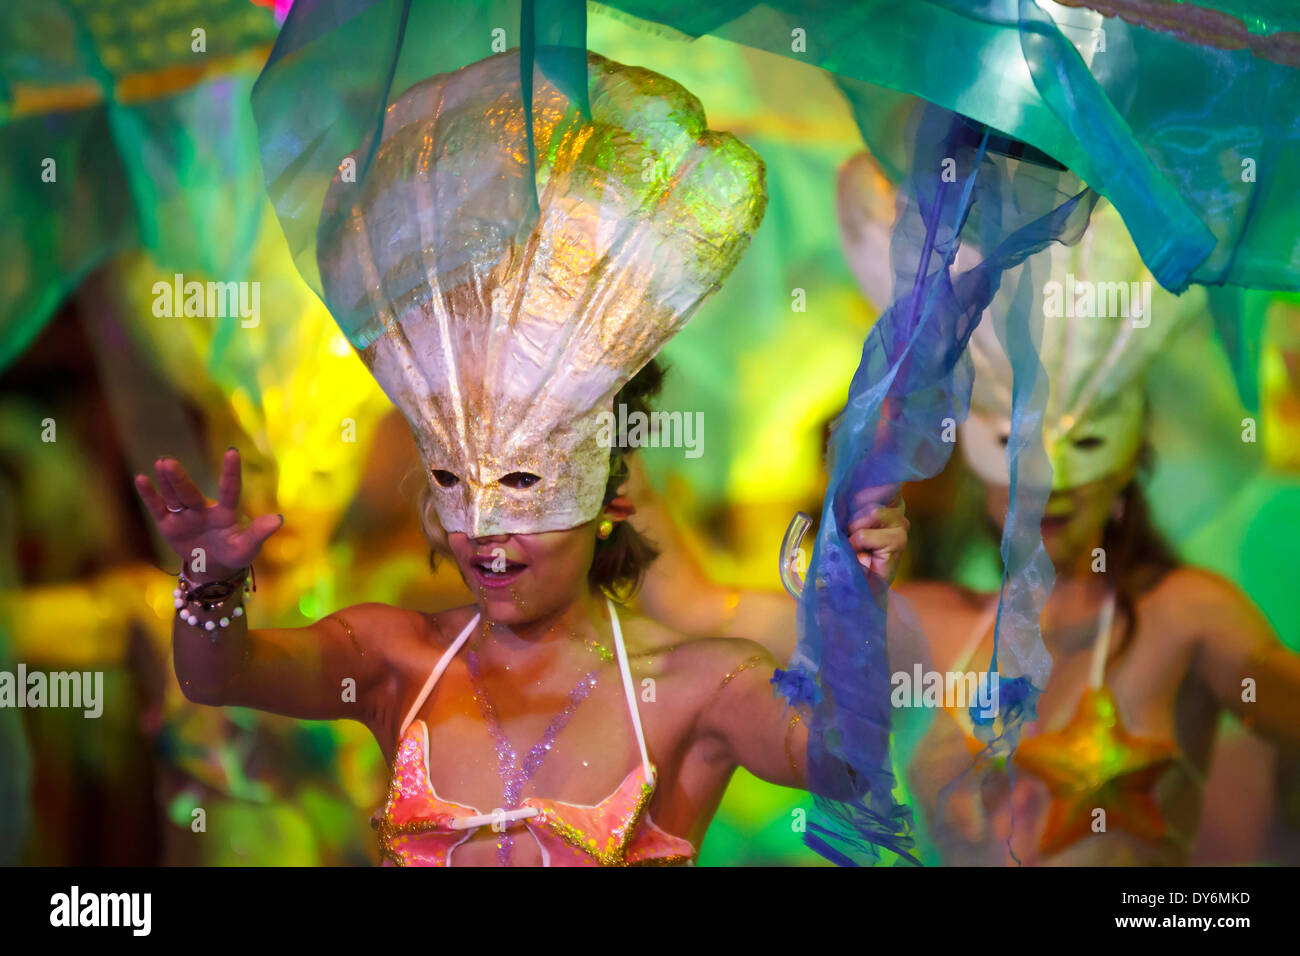 Luces de carnaval, bailes, mitos y leyendas. Foto de stock